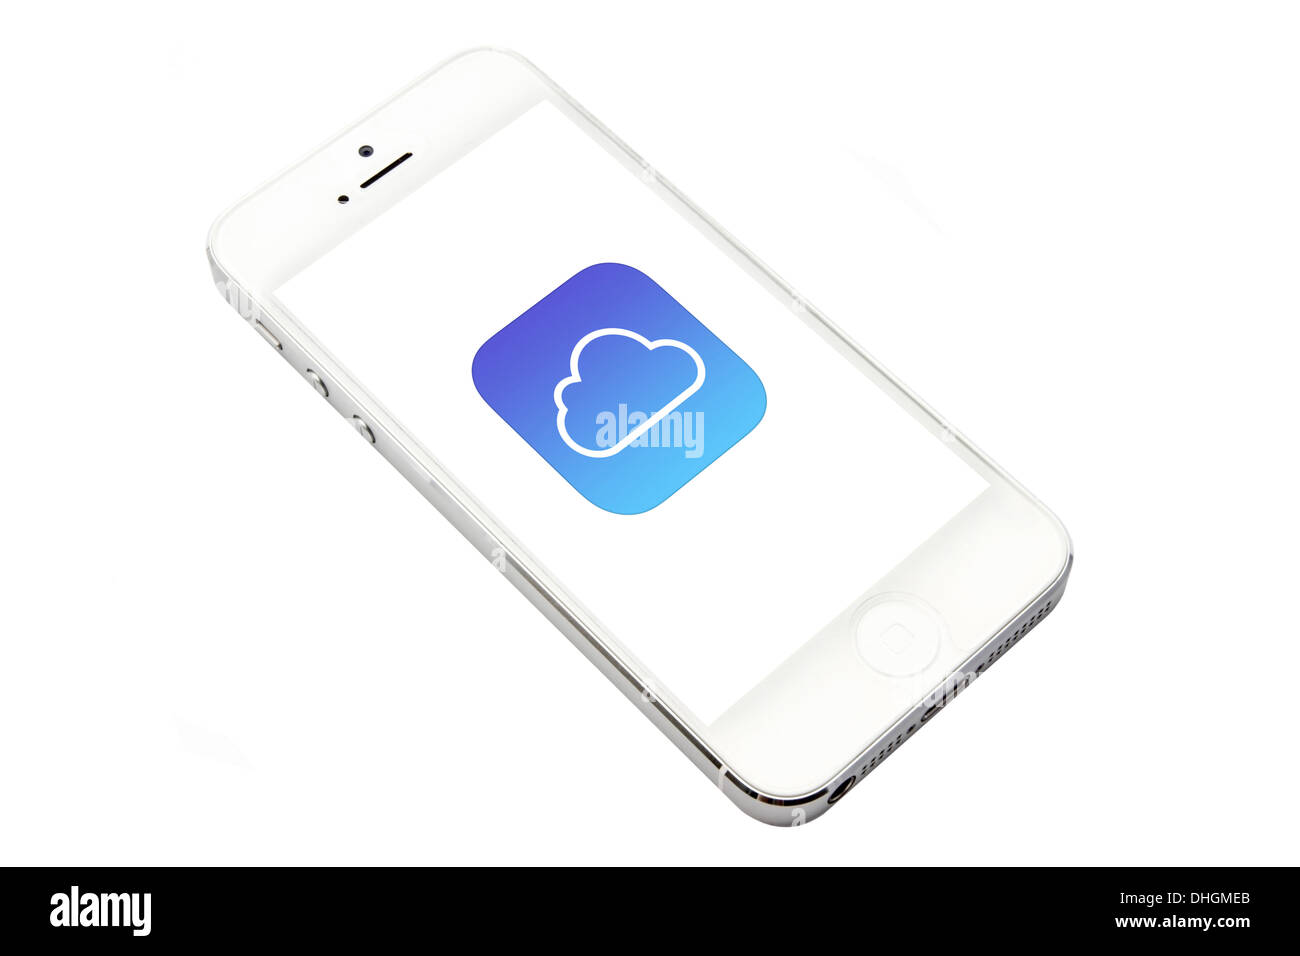 icloud display on iPhone 5 screen Stock Photo